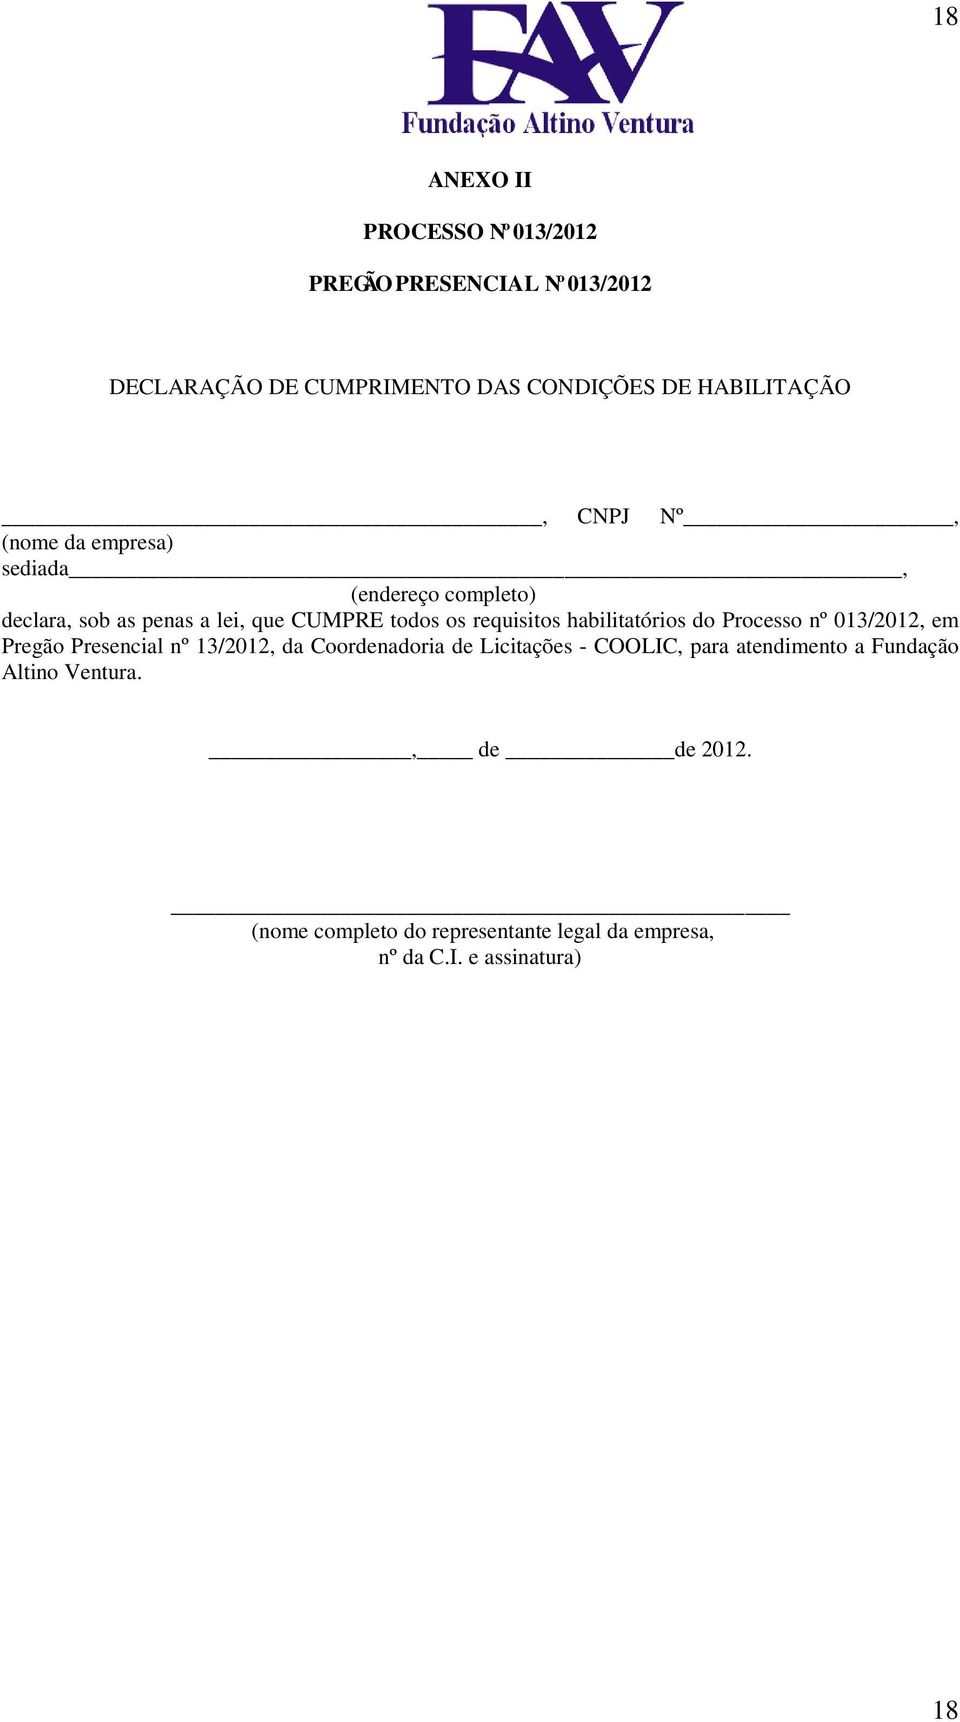 habilitatórios do Processo nº 013/2012, em Pregão Presencial nº 13/2012, da Coordenadoria de Licitações - COOLIC, para